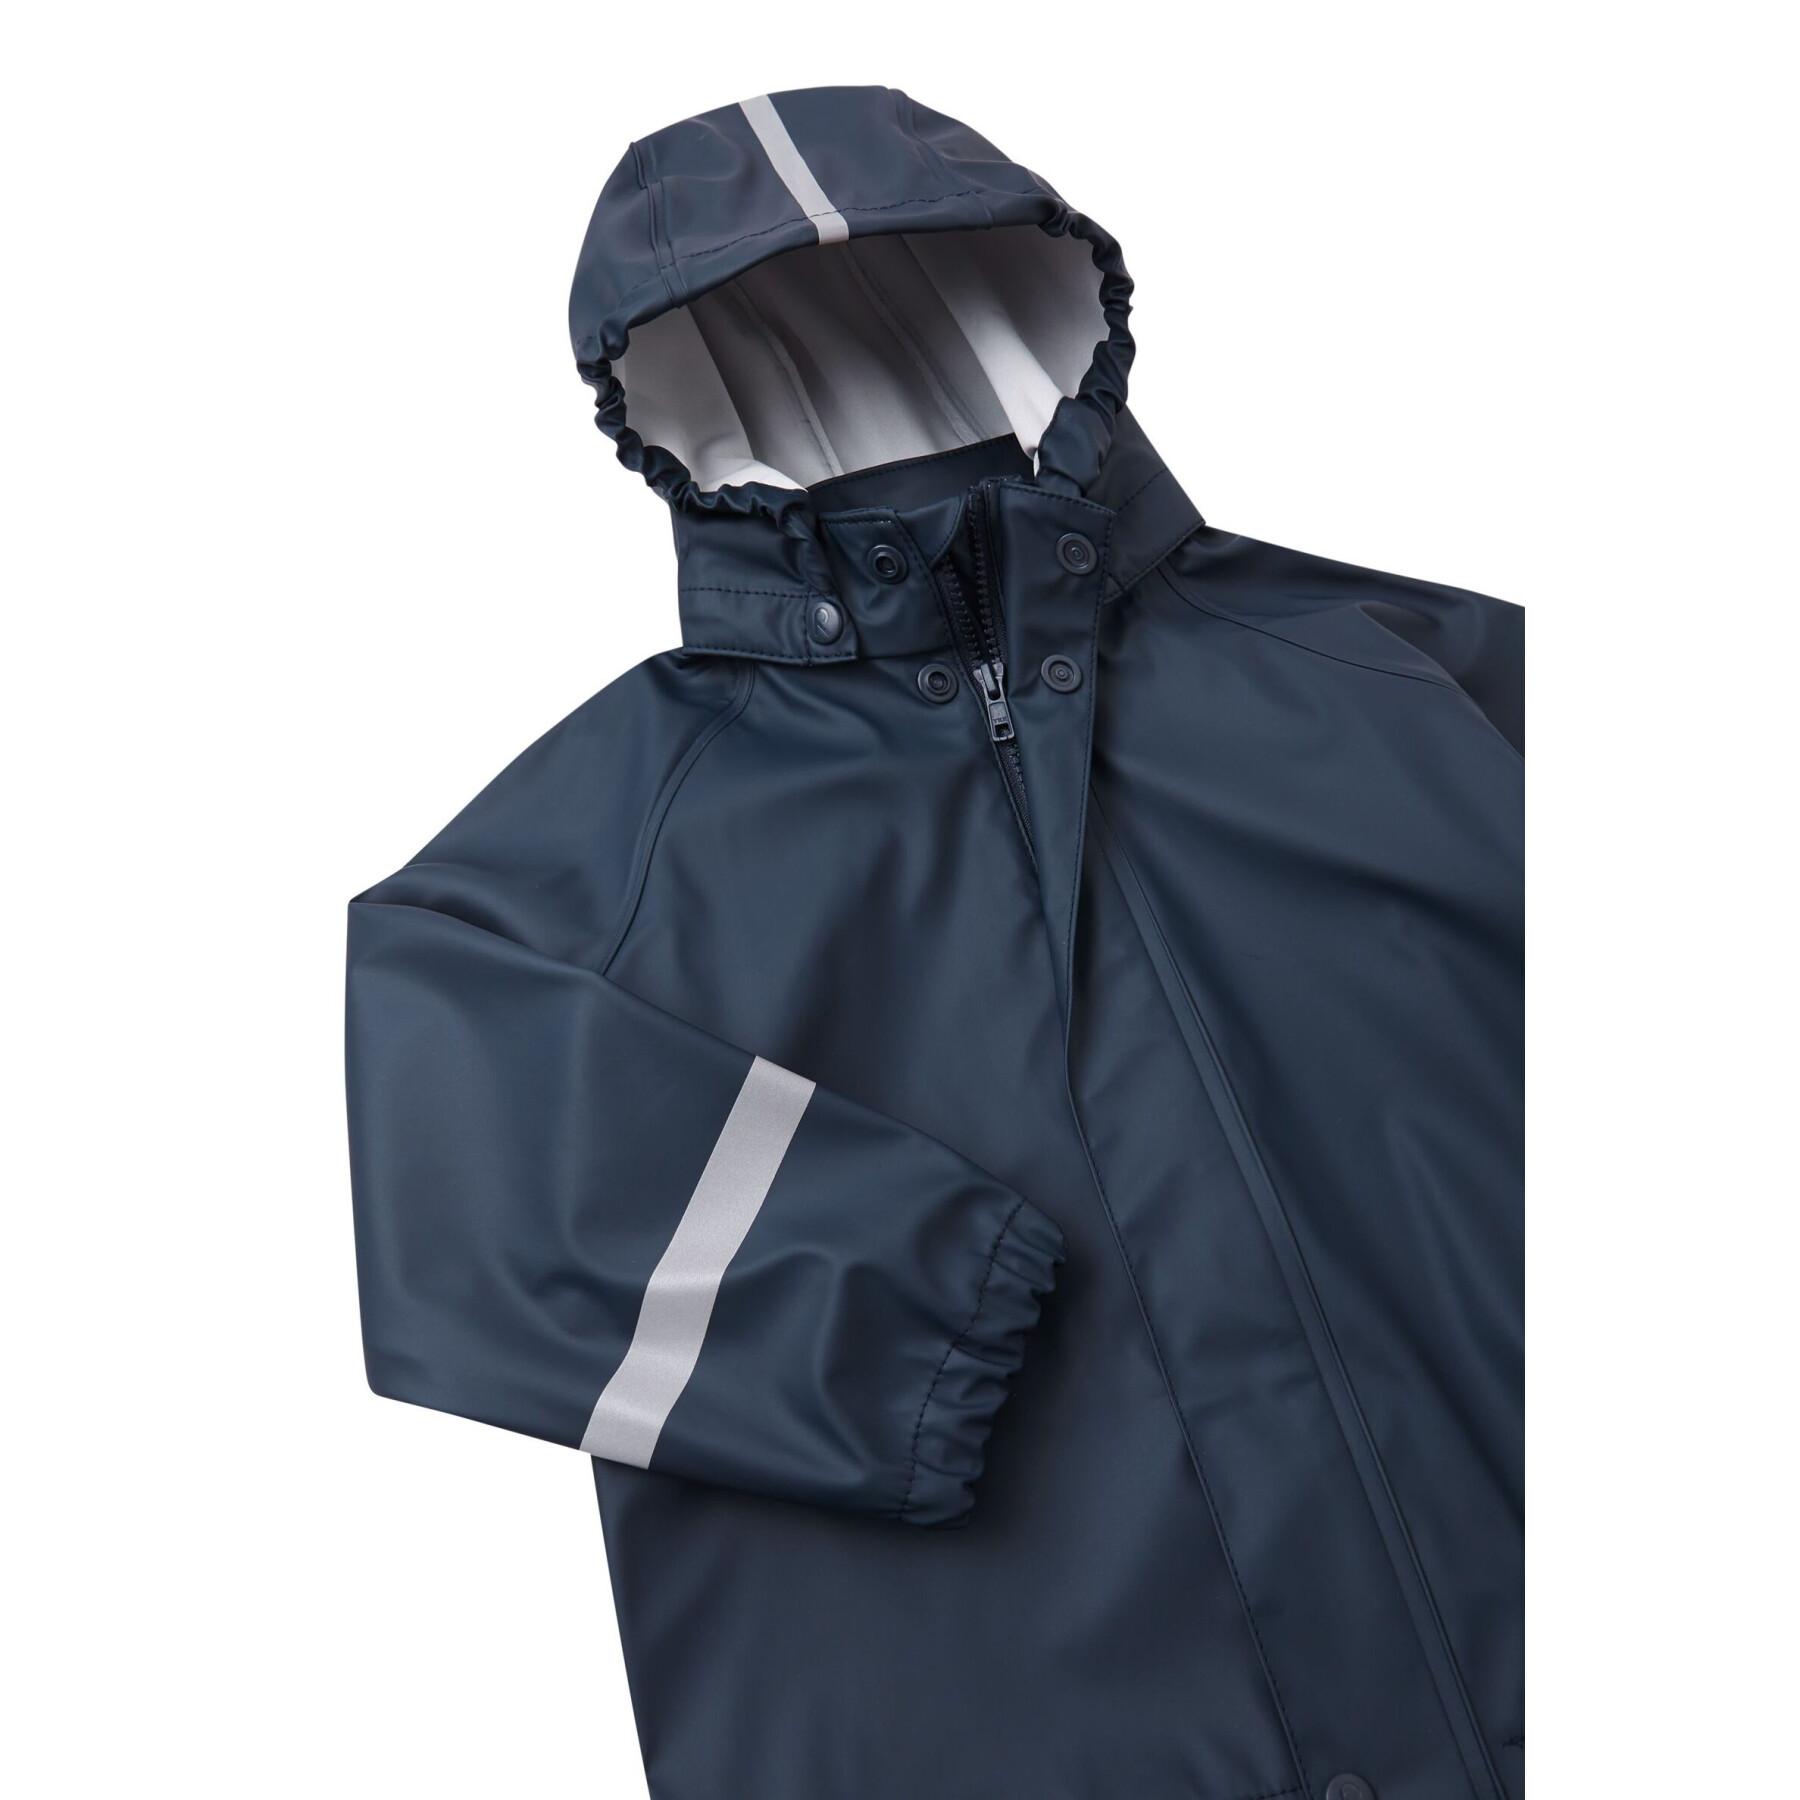 Waterproof jacket for children Reima Lampi